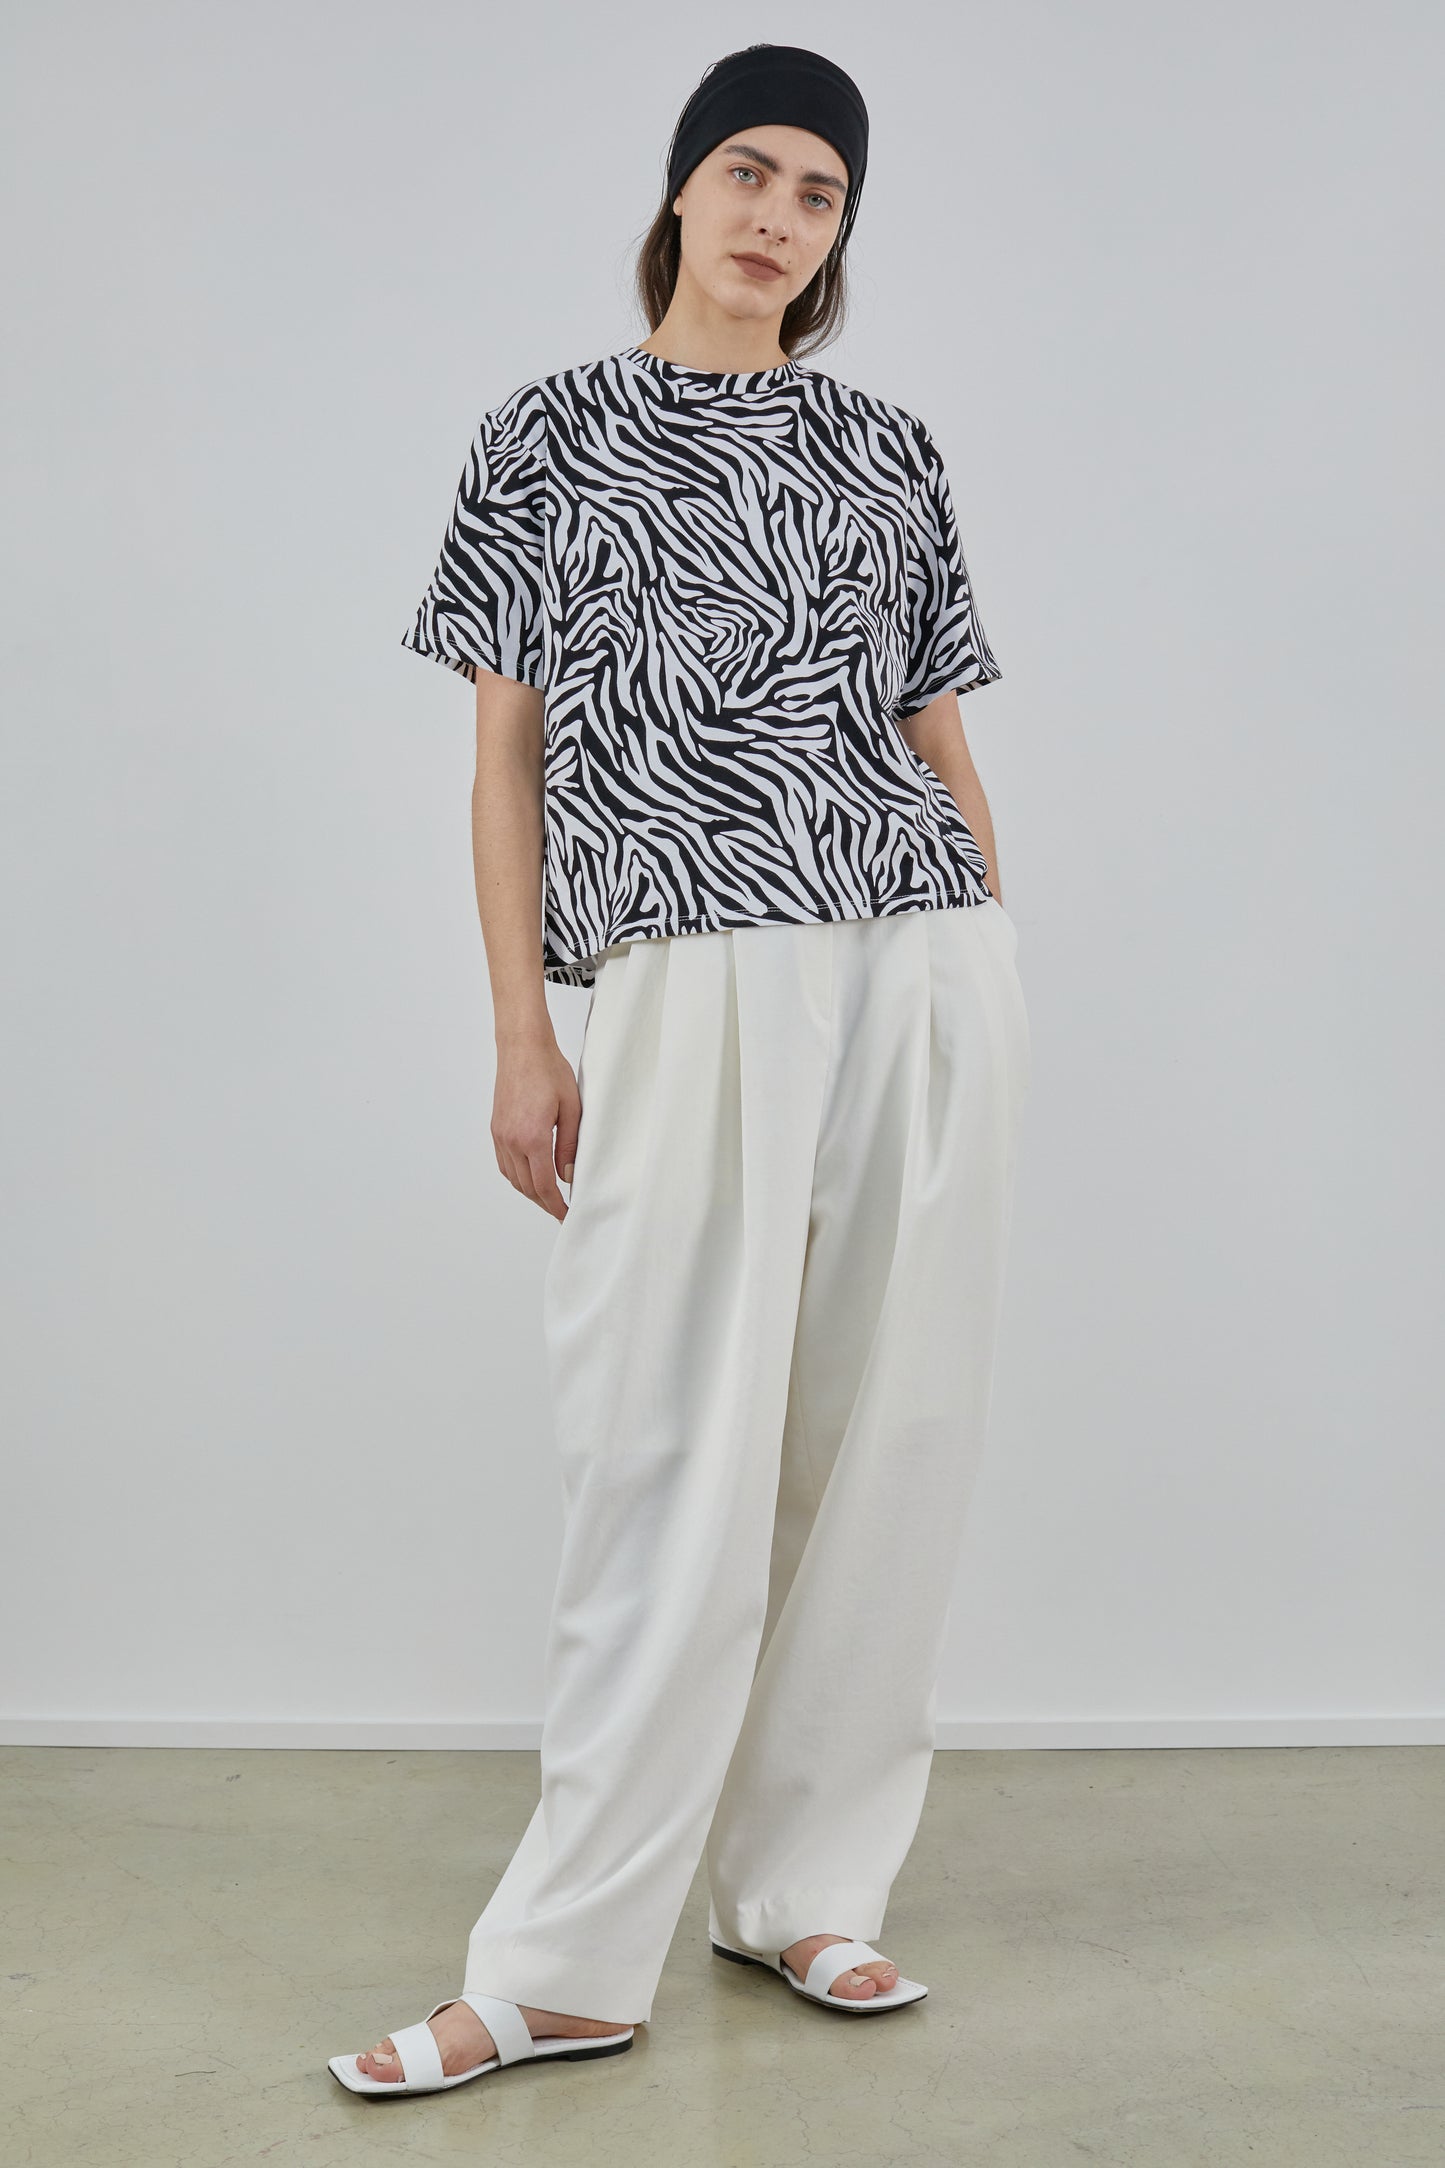 Zebra Print T-Shirt, White